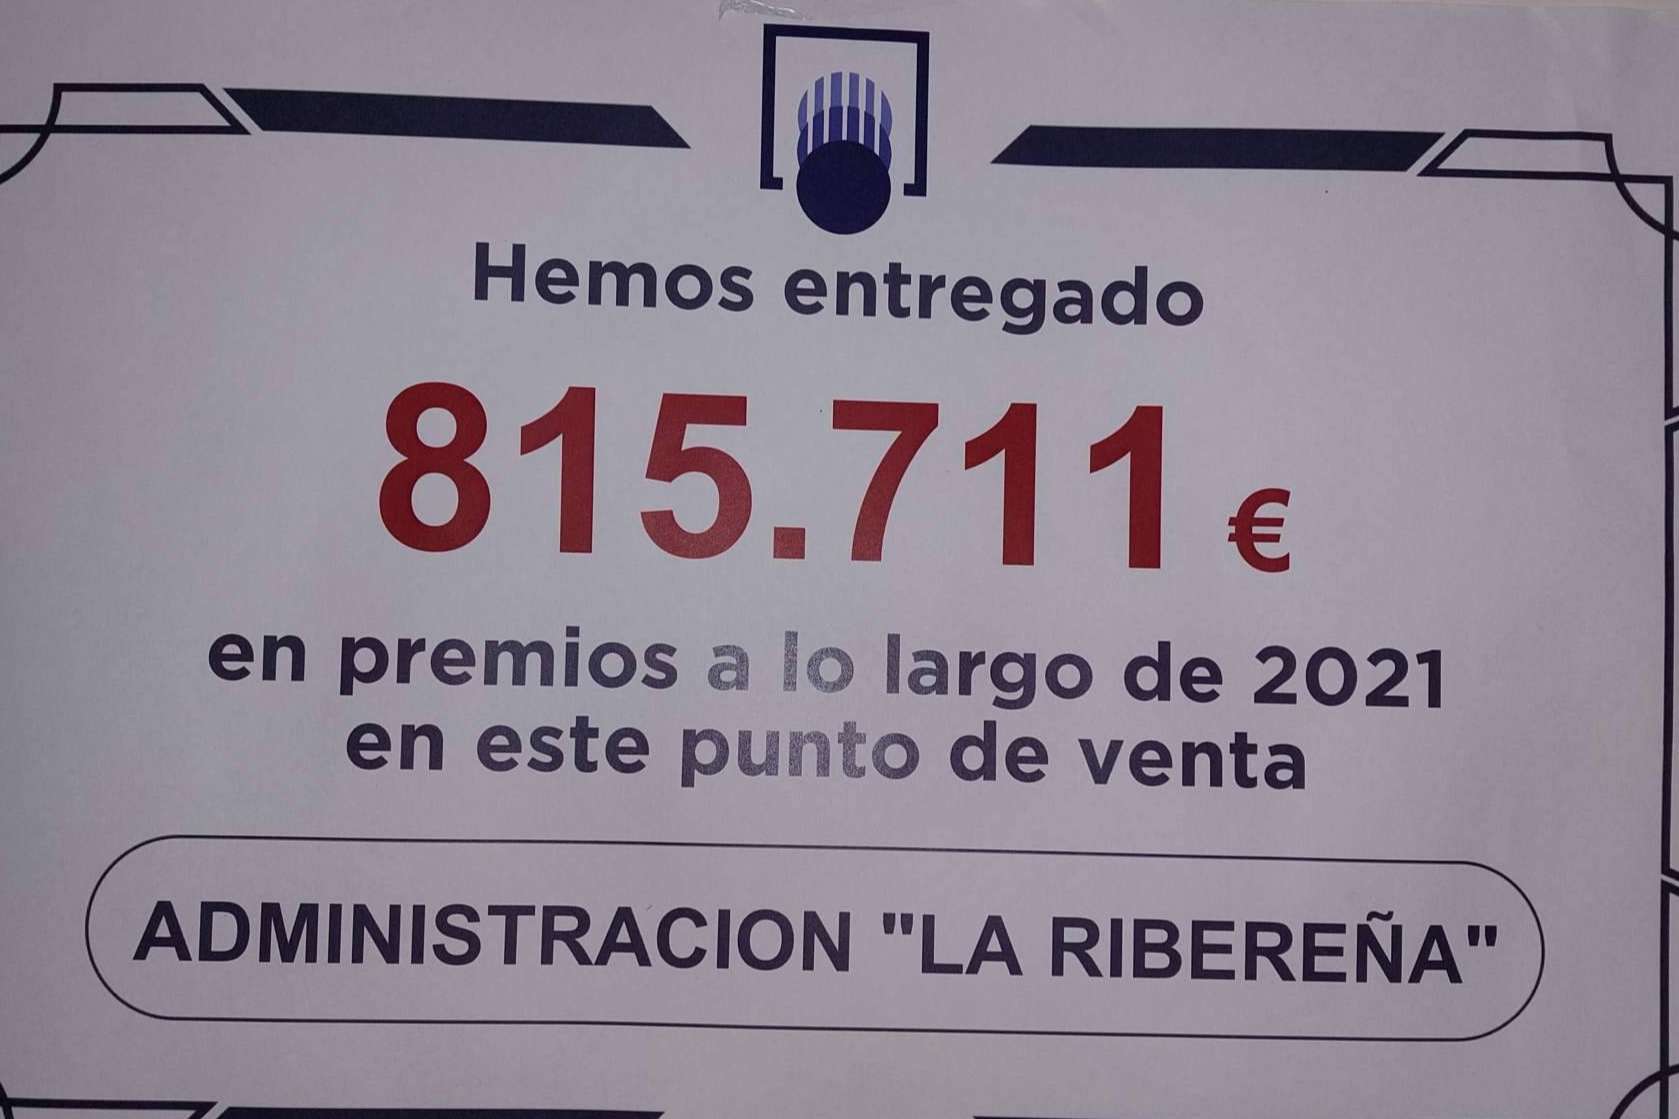 La Ribereña aumenta los premios dados en 2021 un 80 %